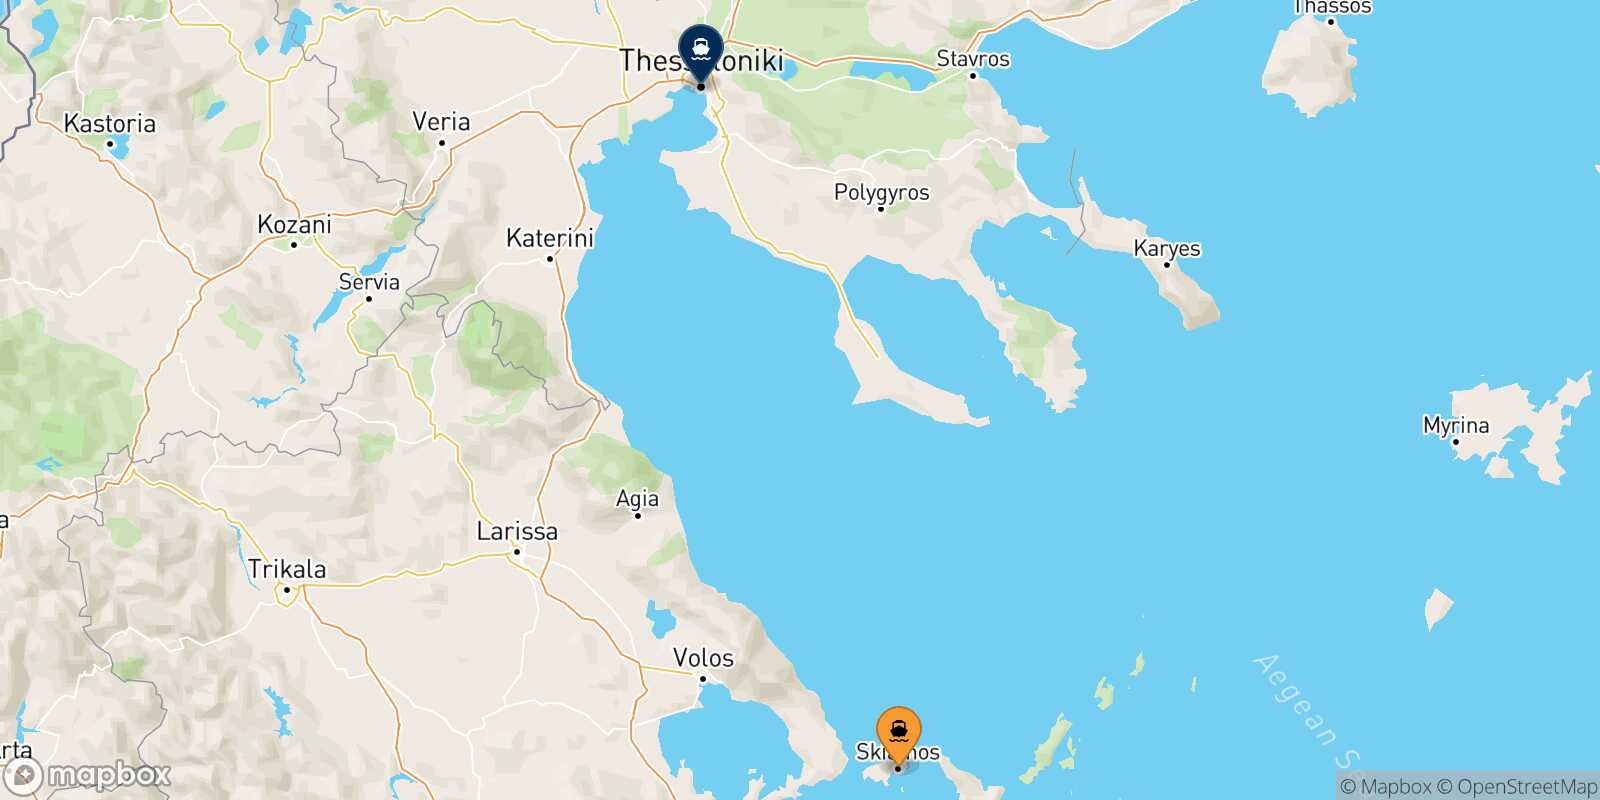 Skiathos Thessaloniki route map